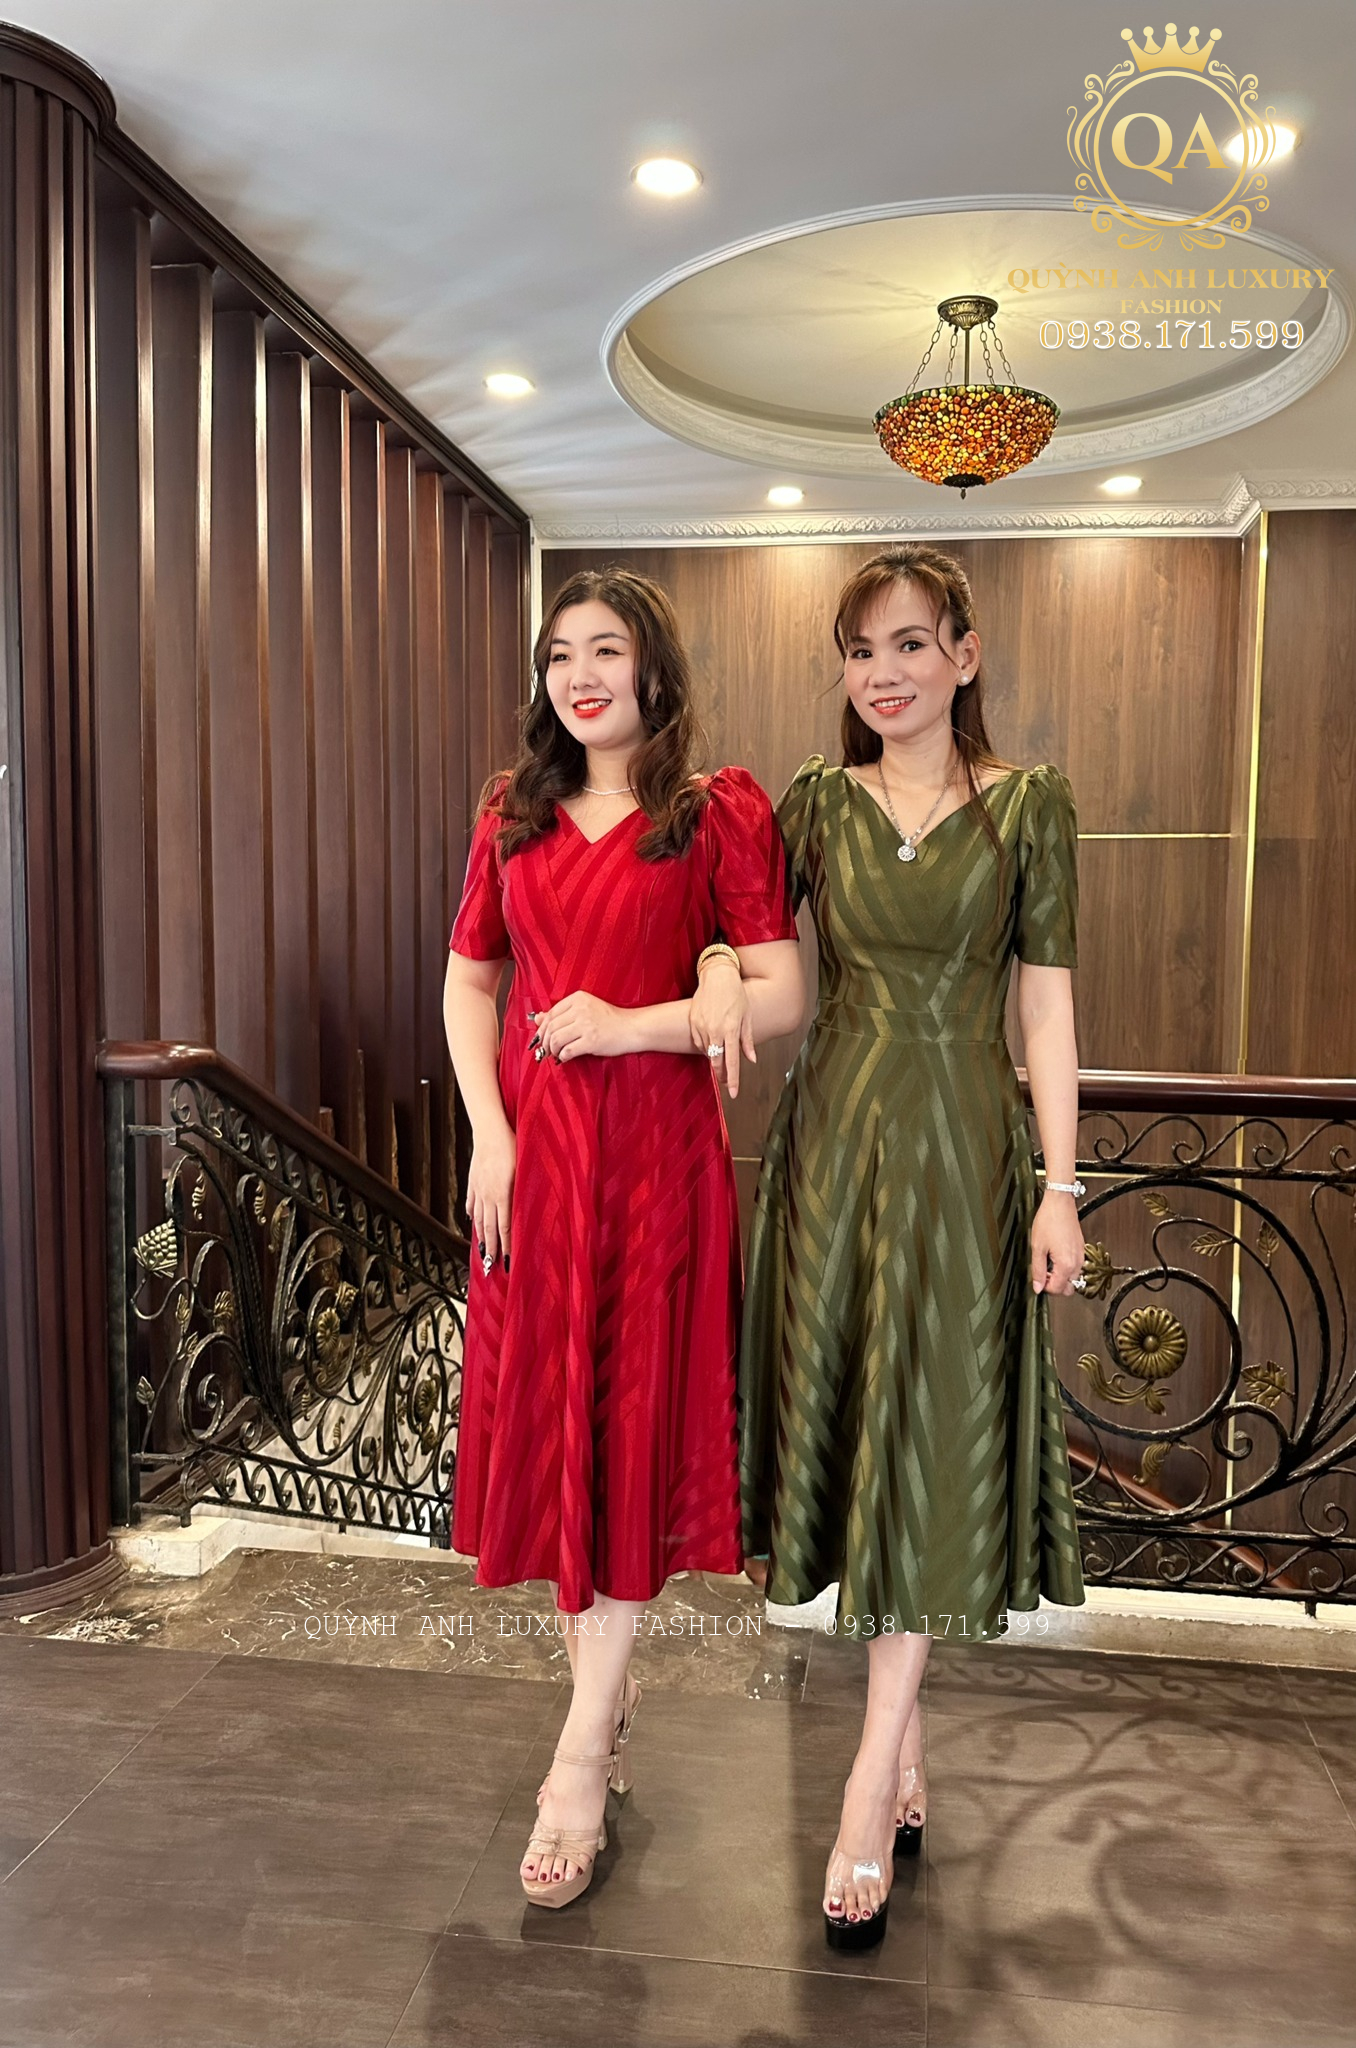 Các mẫu váy xoè đi tiệc trung niên cao cấp nhất của Quỳnh Anh Luxury